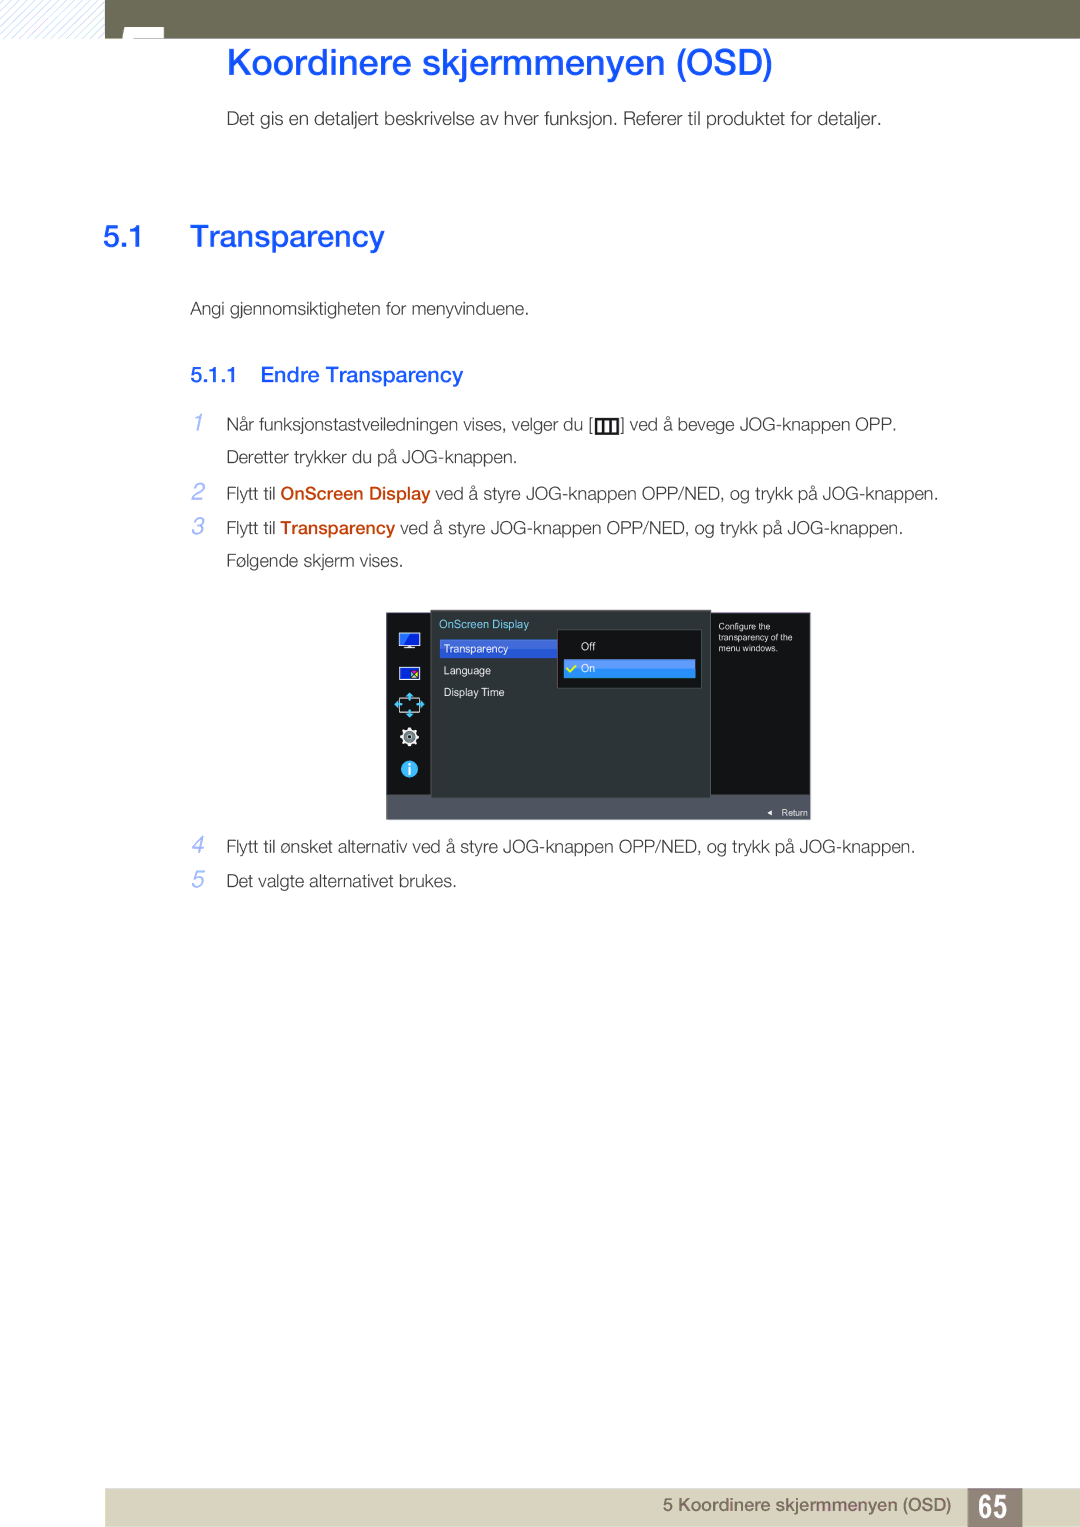 Samsung LU28E590DS/EN, LU24E590DS/EN manual Koordinere skjermmenyen OSD, Endre Transparency 